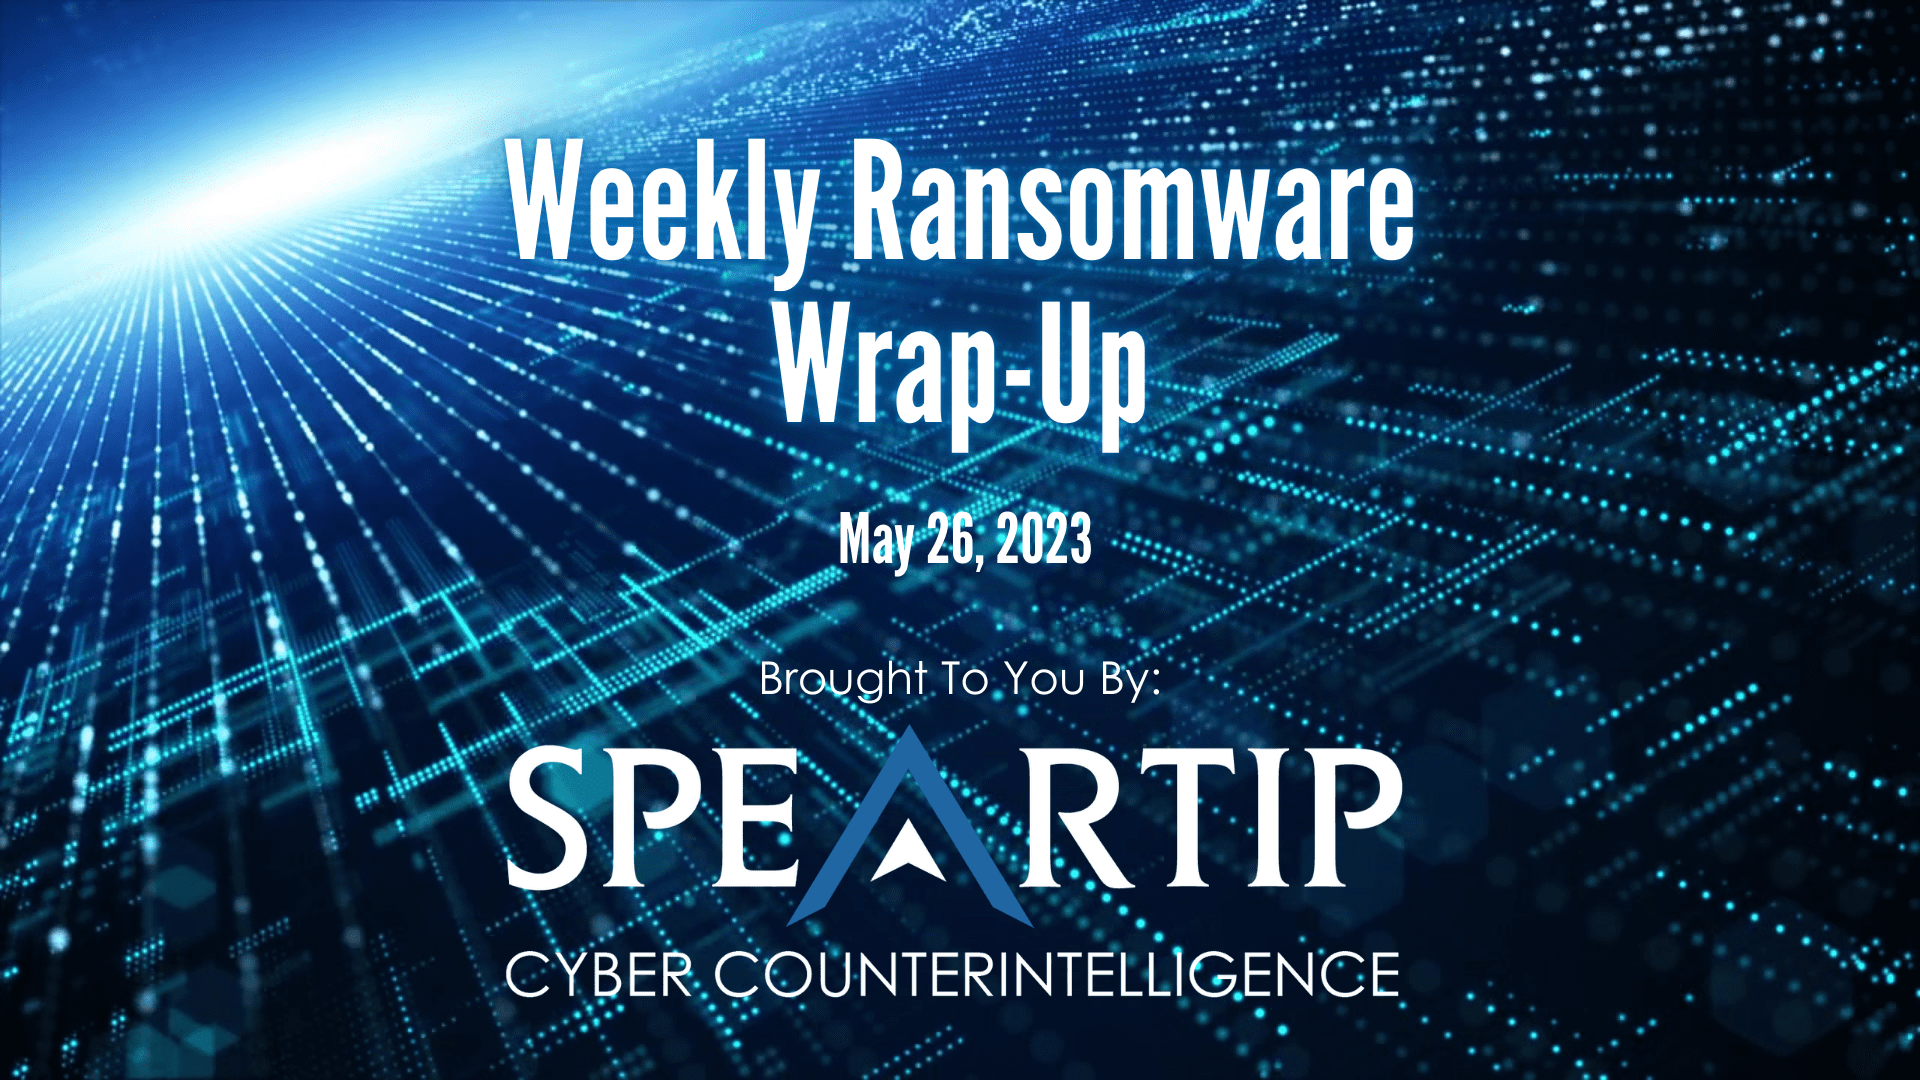 May 26, 2023 Ransomware Wrap-Up